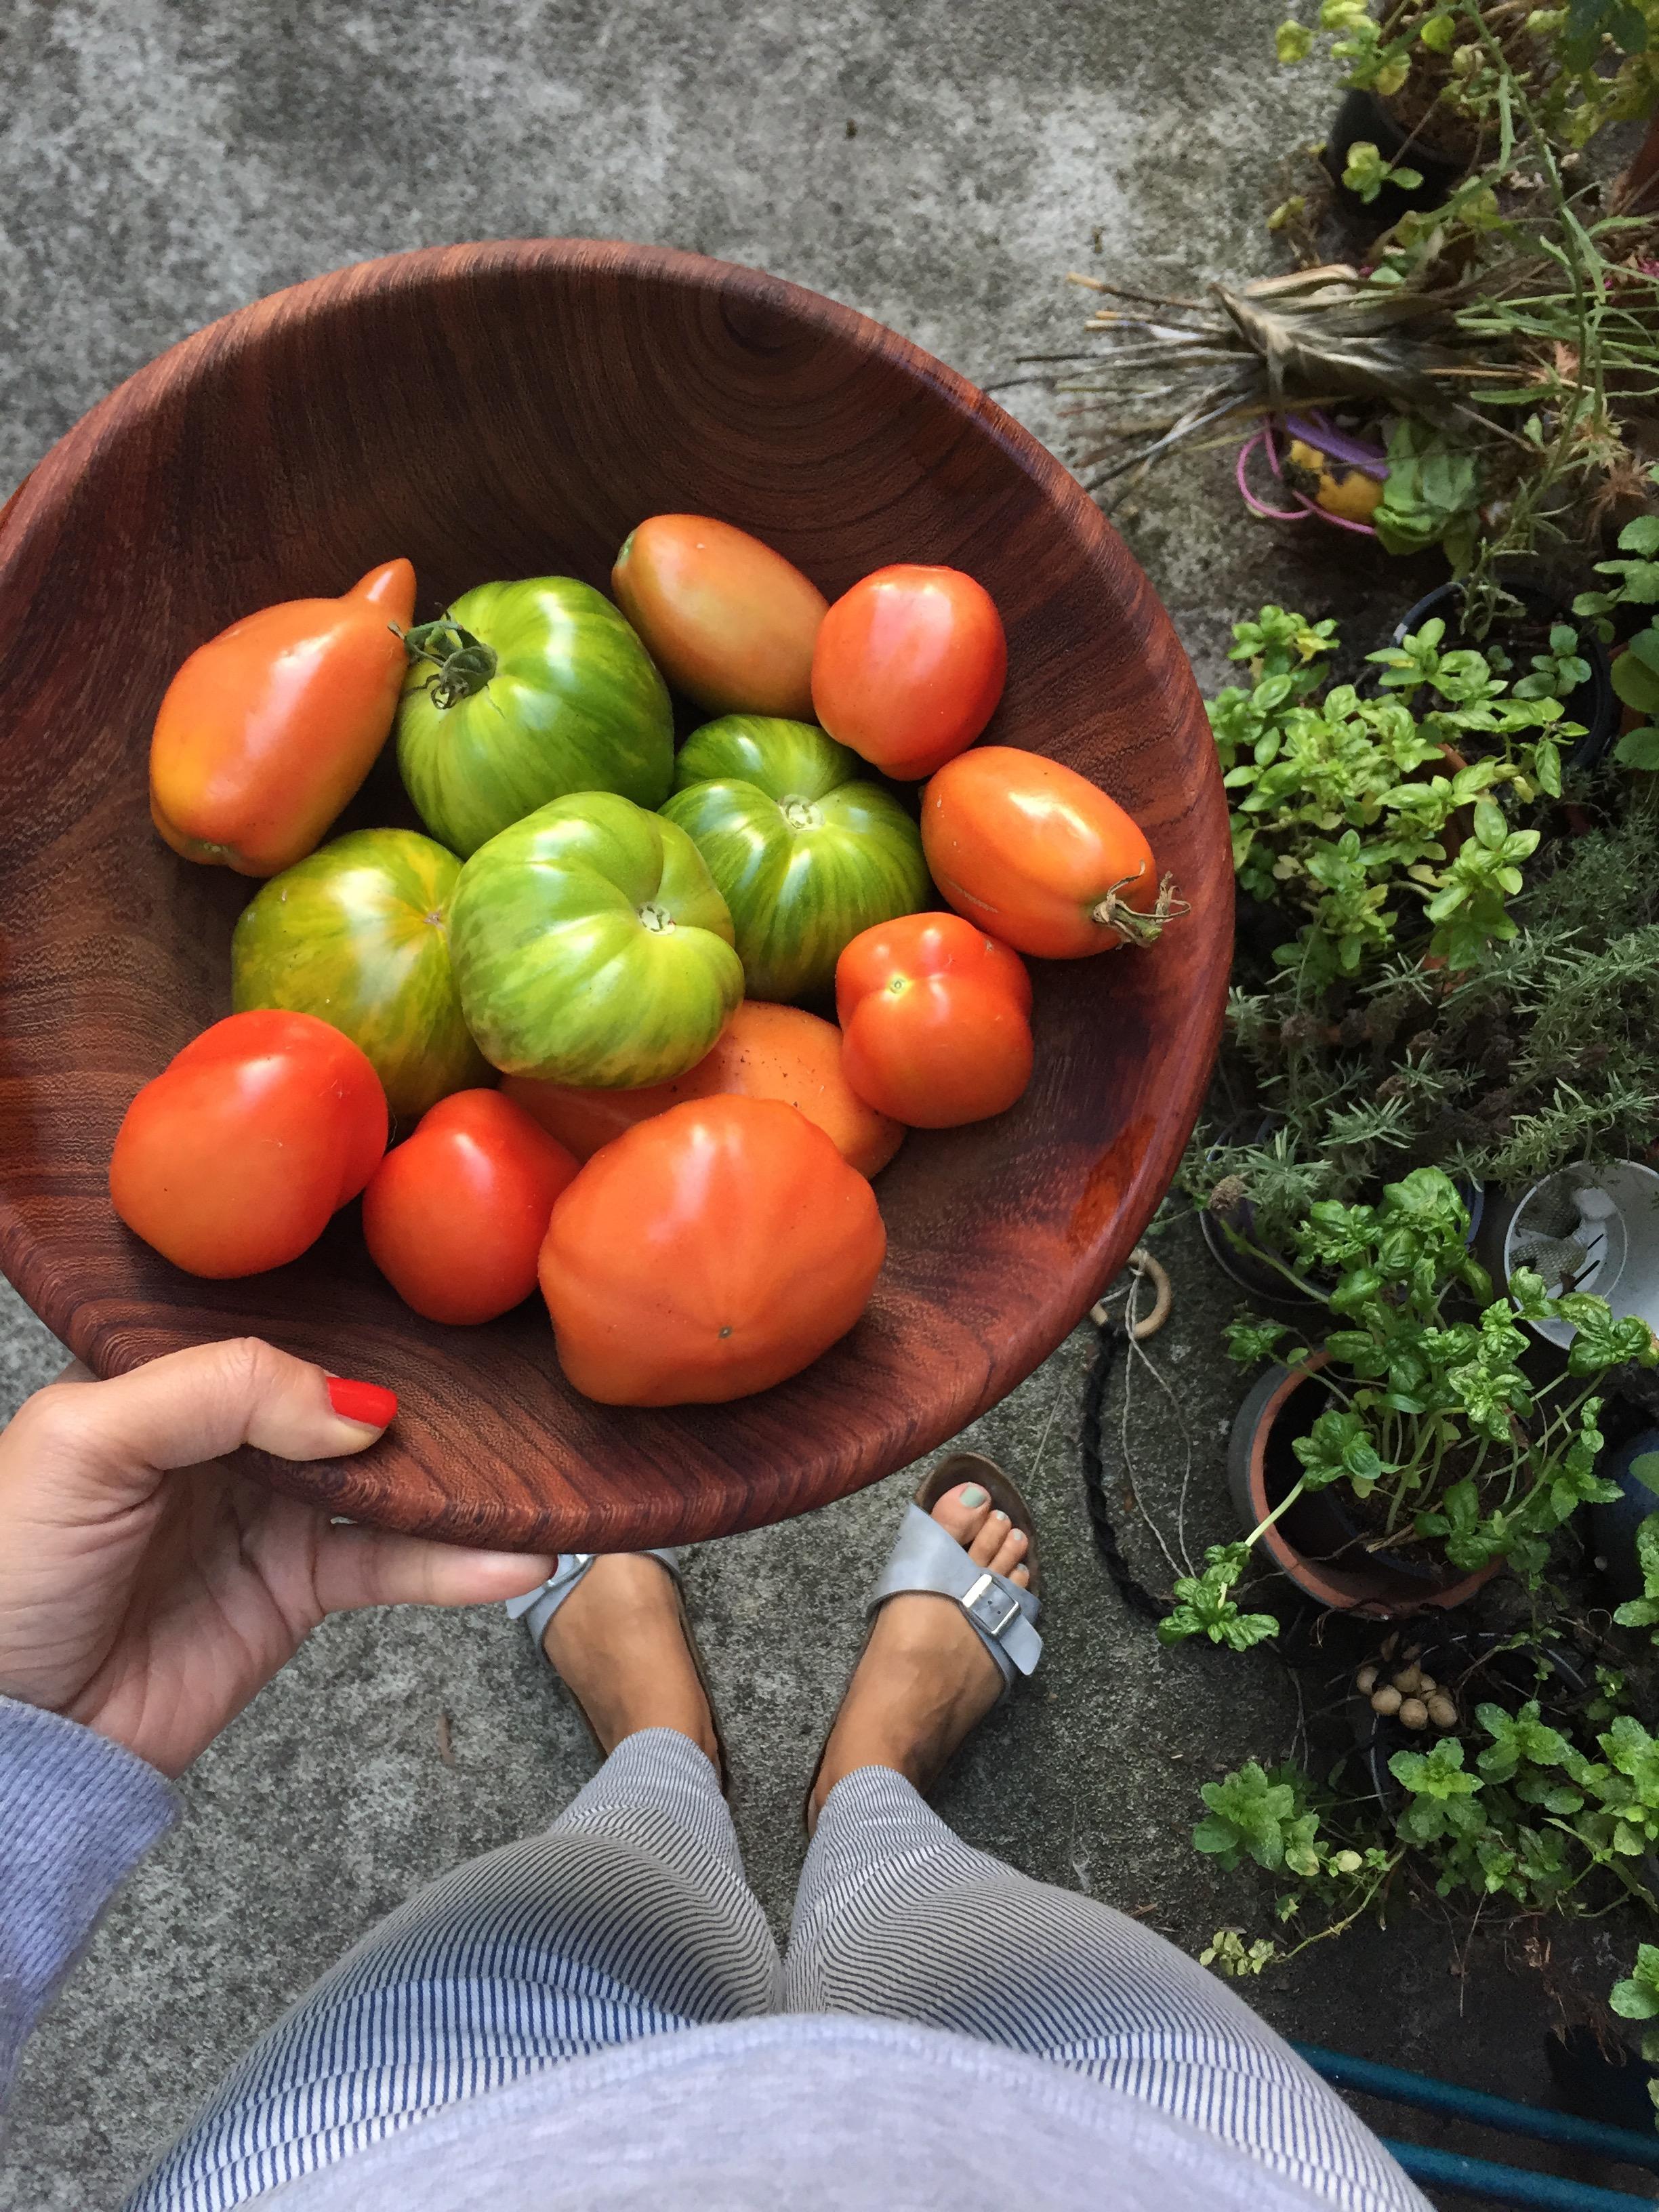 Frische Tomaten aus dem Garten 🍅 
#urbangardening #tomaten #grünetomaten #stadtgarten #citygarden #eigeneernte 